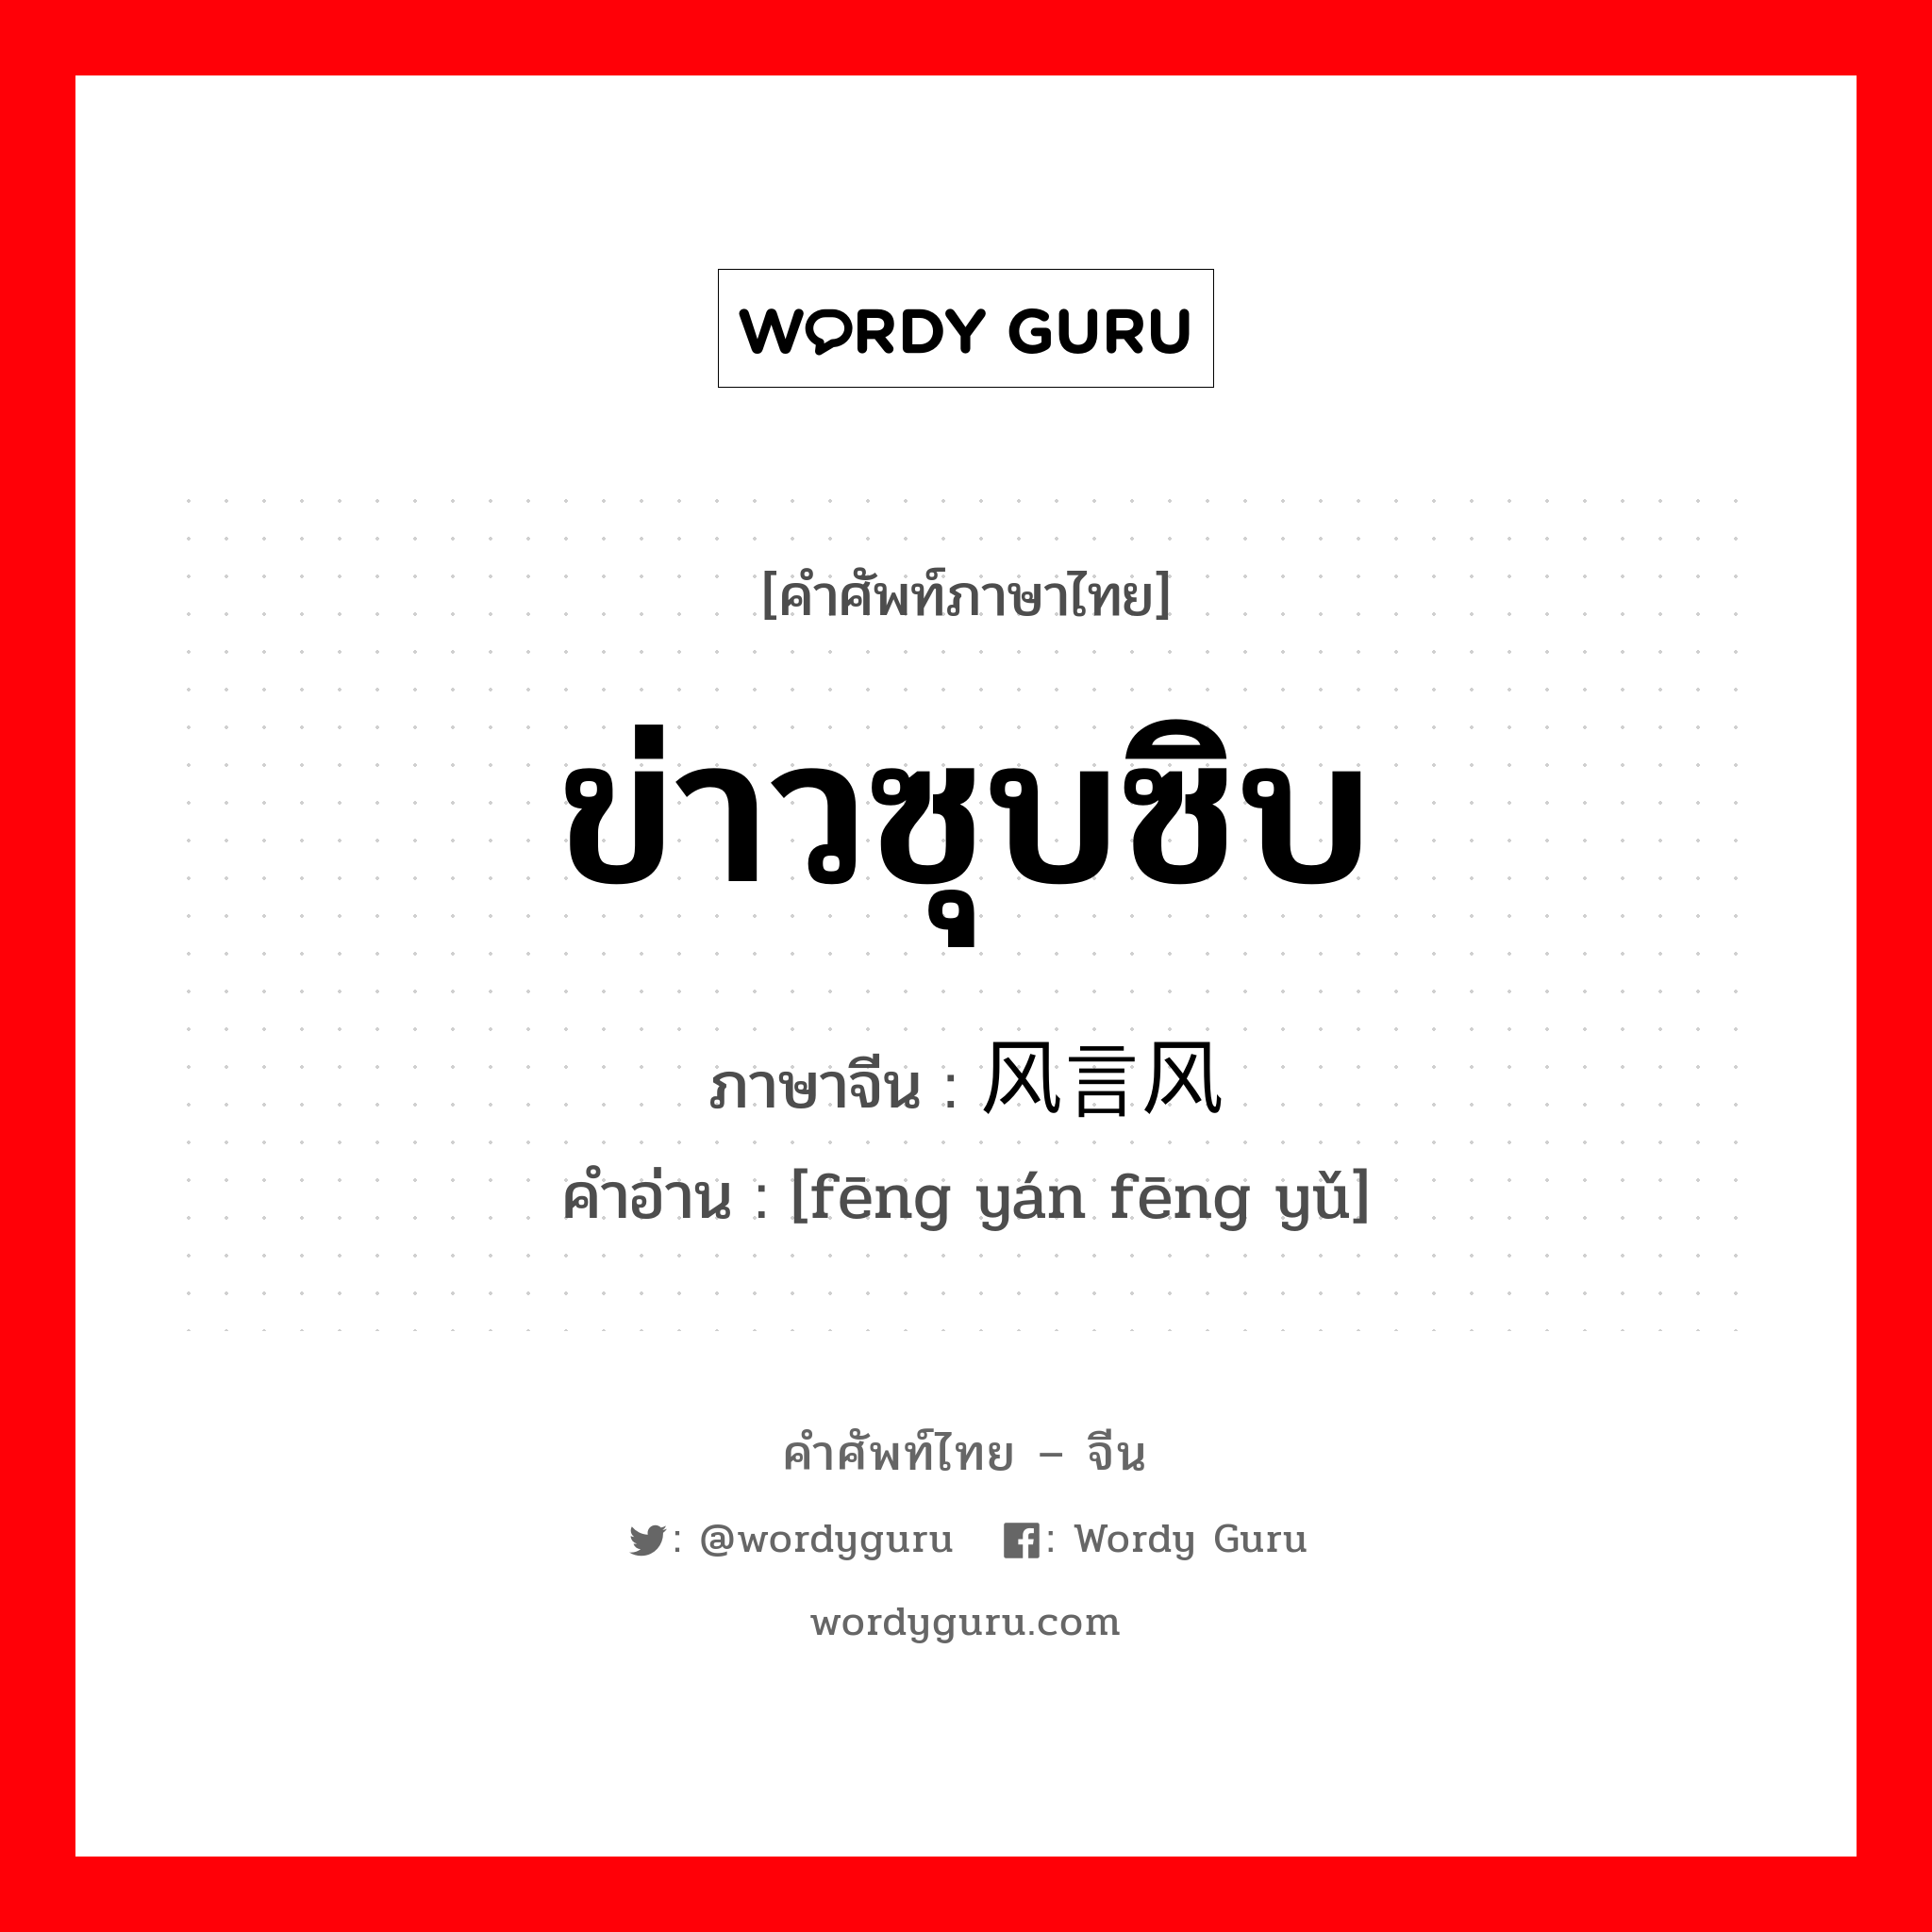 ข่าวซุบซิบ ภาษาจีนคืออะไร, คำศัพท์ภาษาไทย - จีน ข่าวซุบซิบ ภาษาจีน 风言风语 คำอ่าน [fēng yán fēng yǔ]